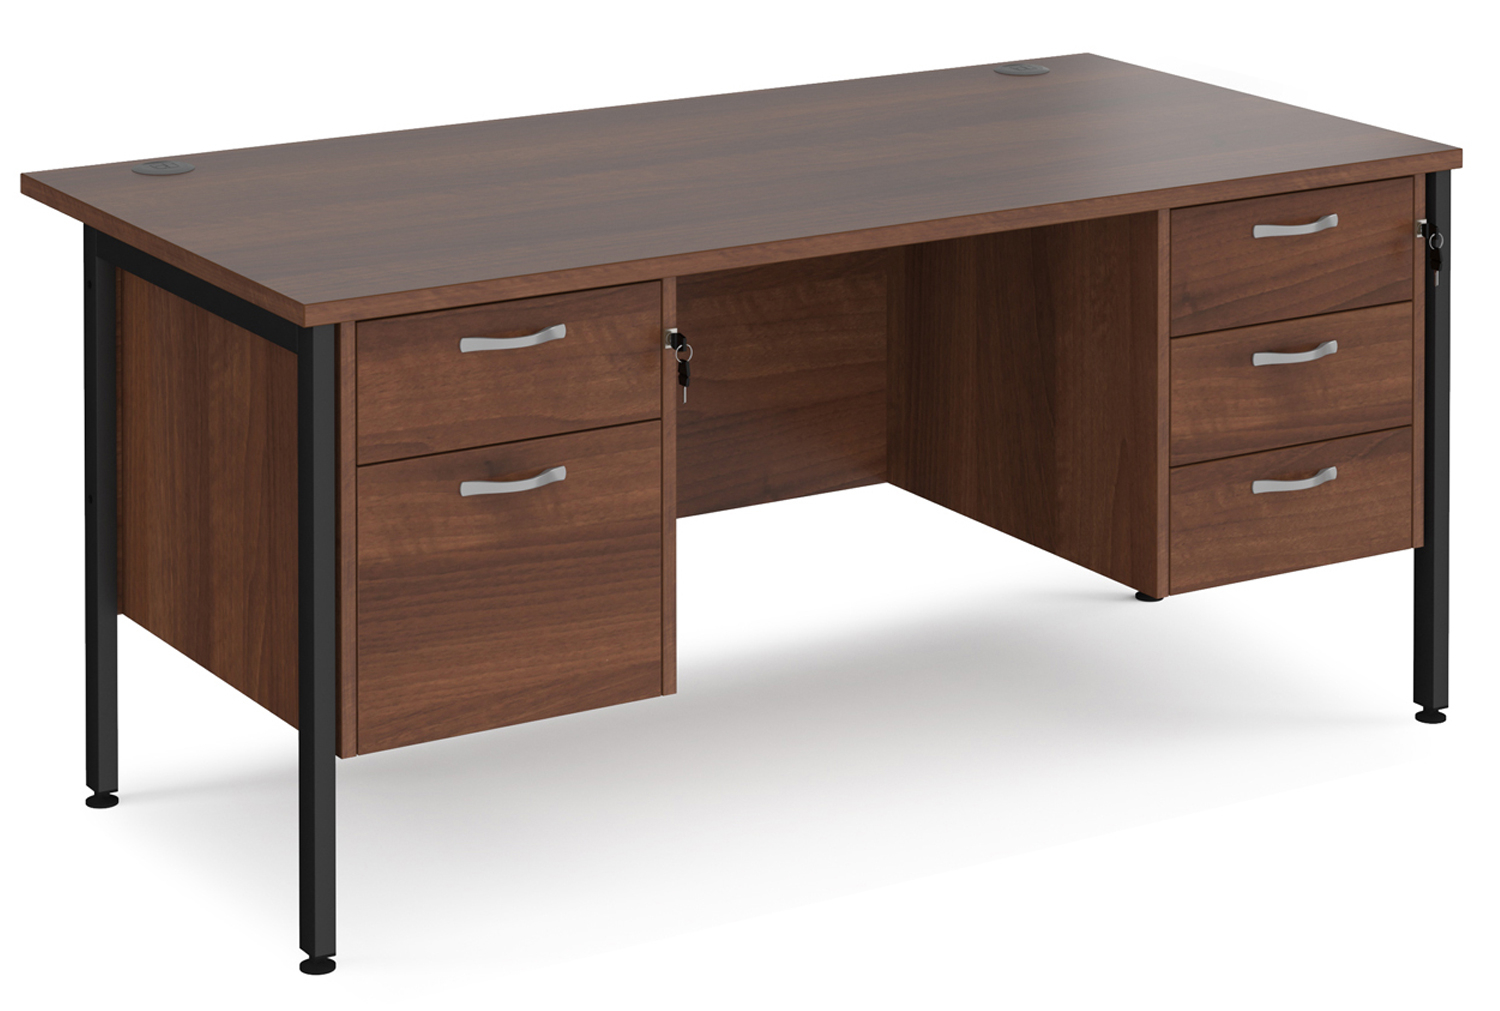 Value Line Deluxe H-Leg Rectangular Office Desk 2+3 Drawers (Black Legs), 160wx80dx73h (cm), Walnut